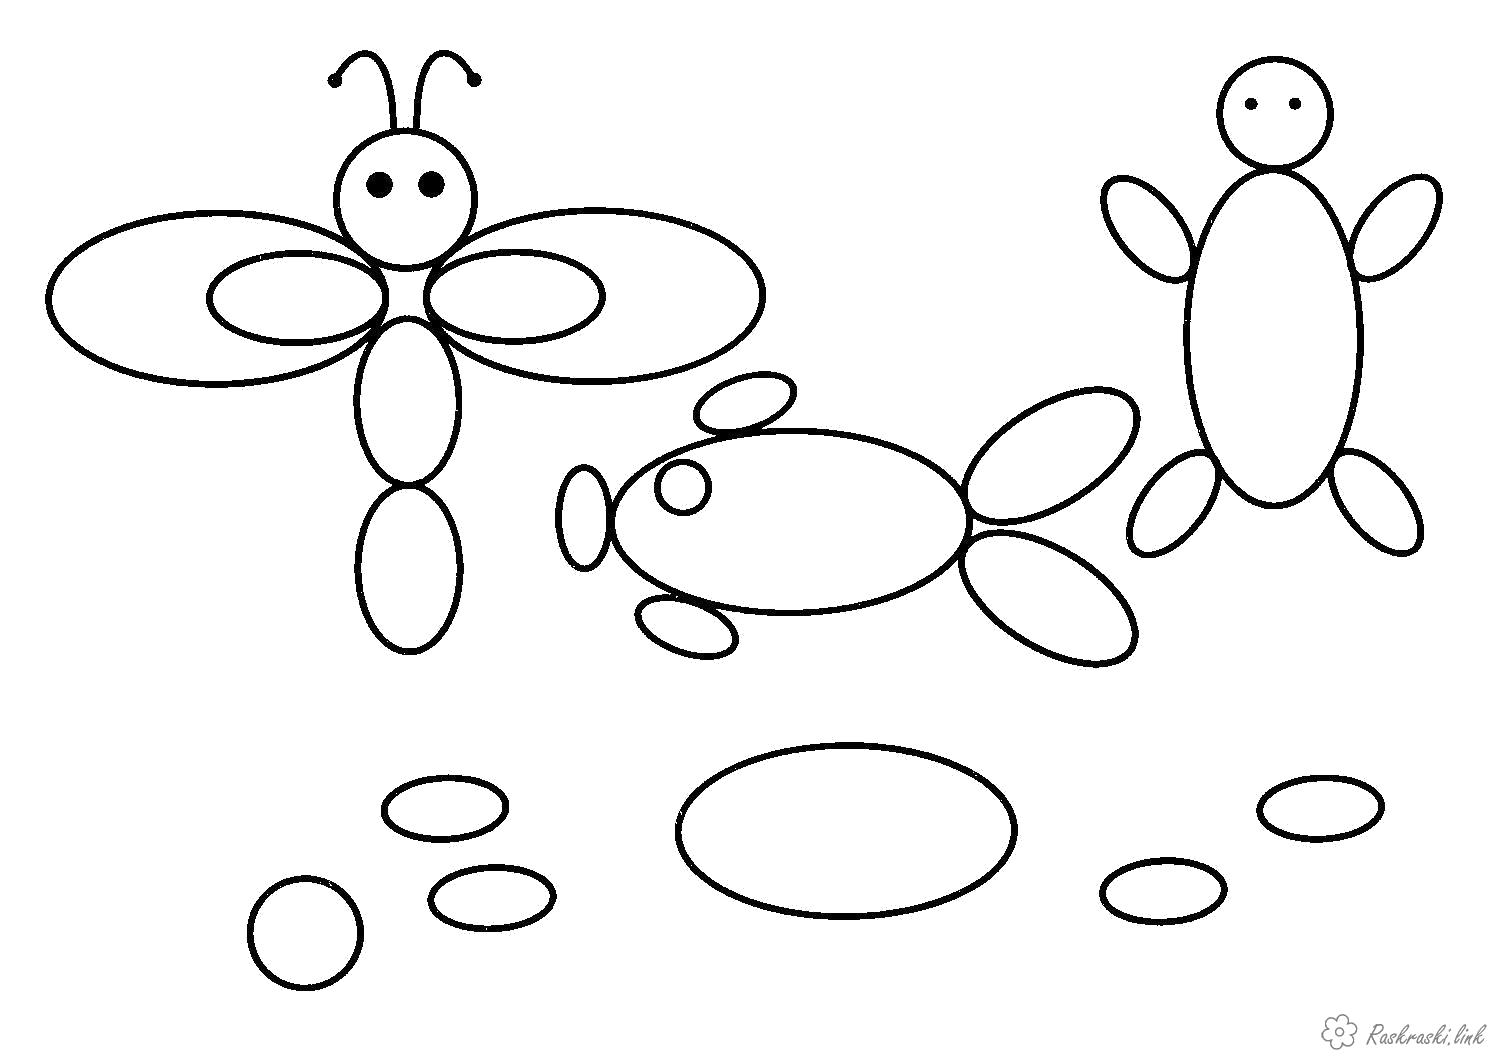 Раскраска  Раскрась геометрические фигуры эллипсы бабочка  . Скачать овал.  Распечатать геометрические фигуры